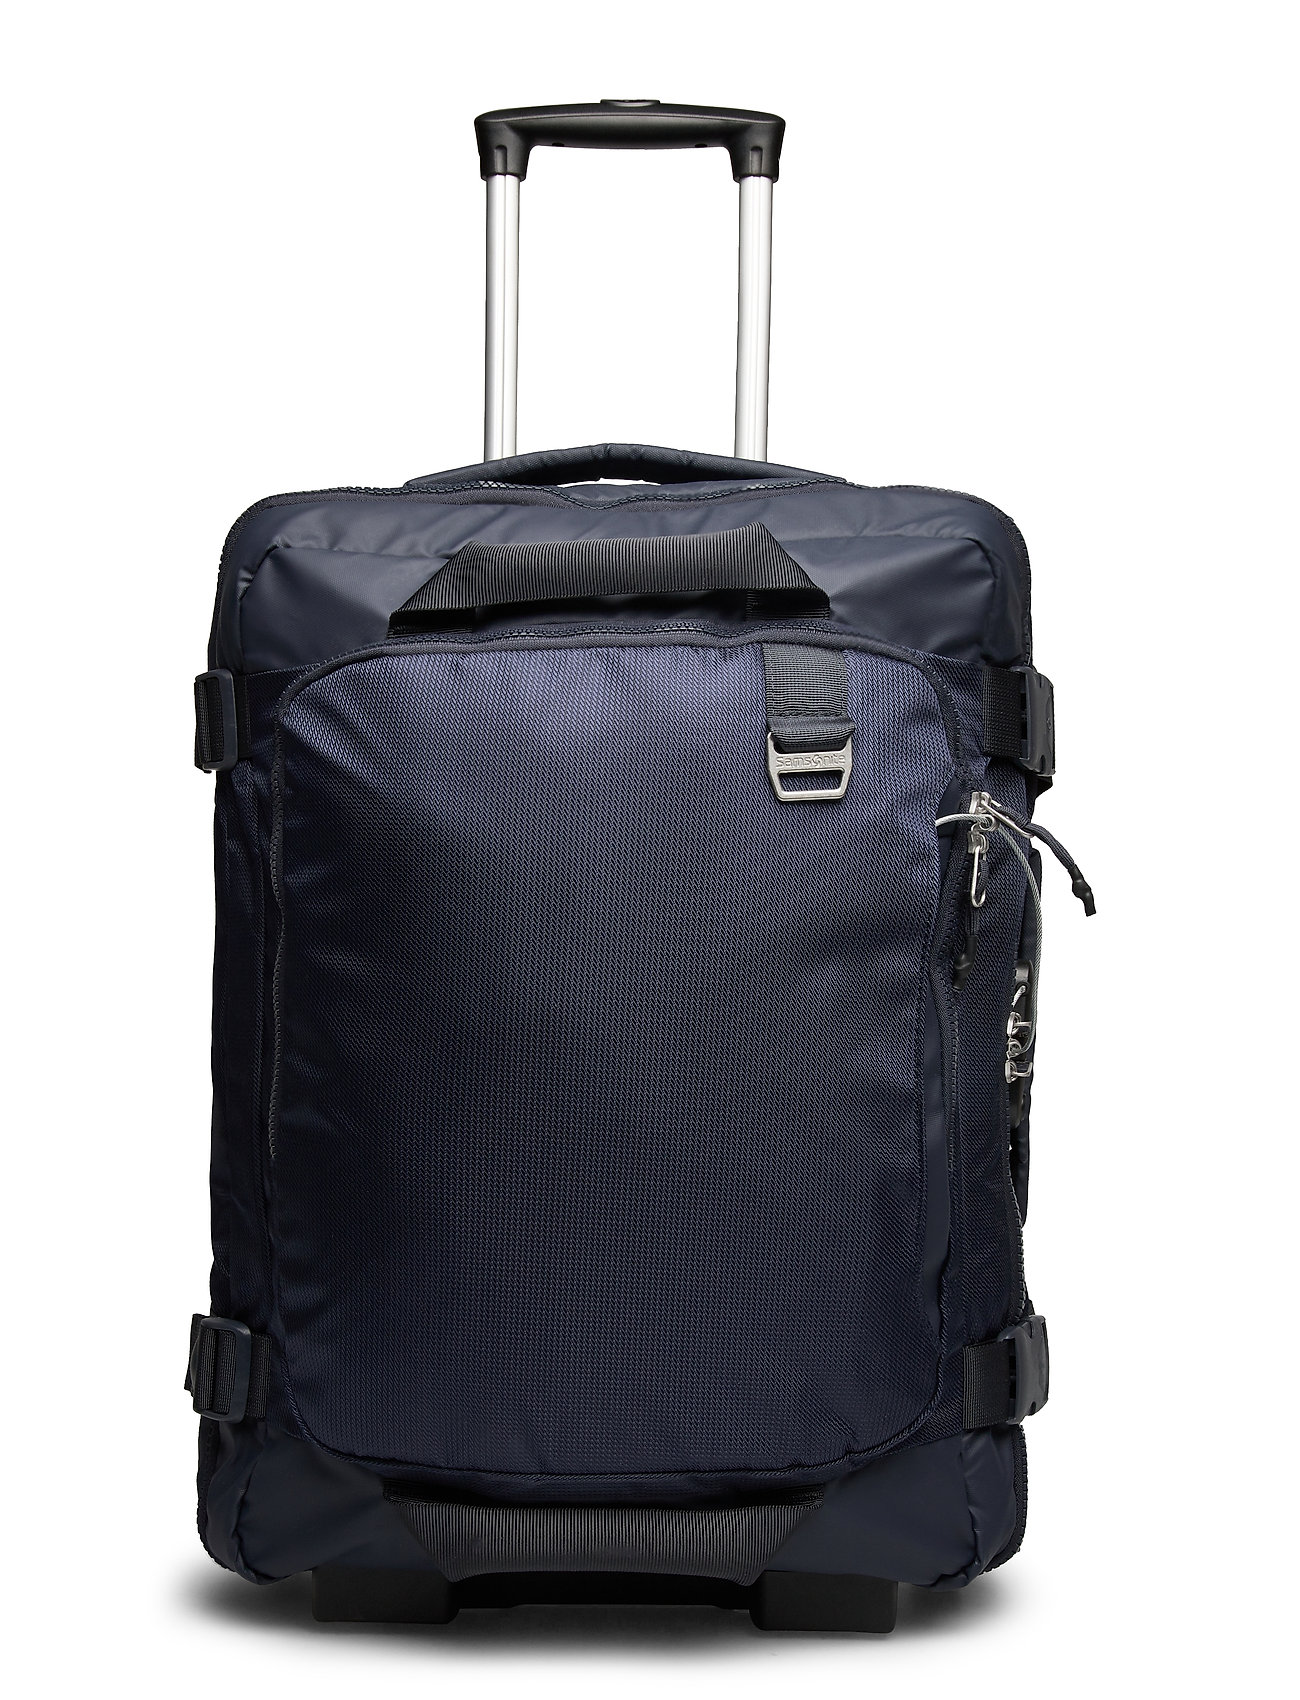 Samsonite Midtown Backpack/wl 55 - Suitcases